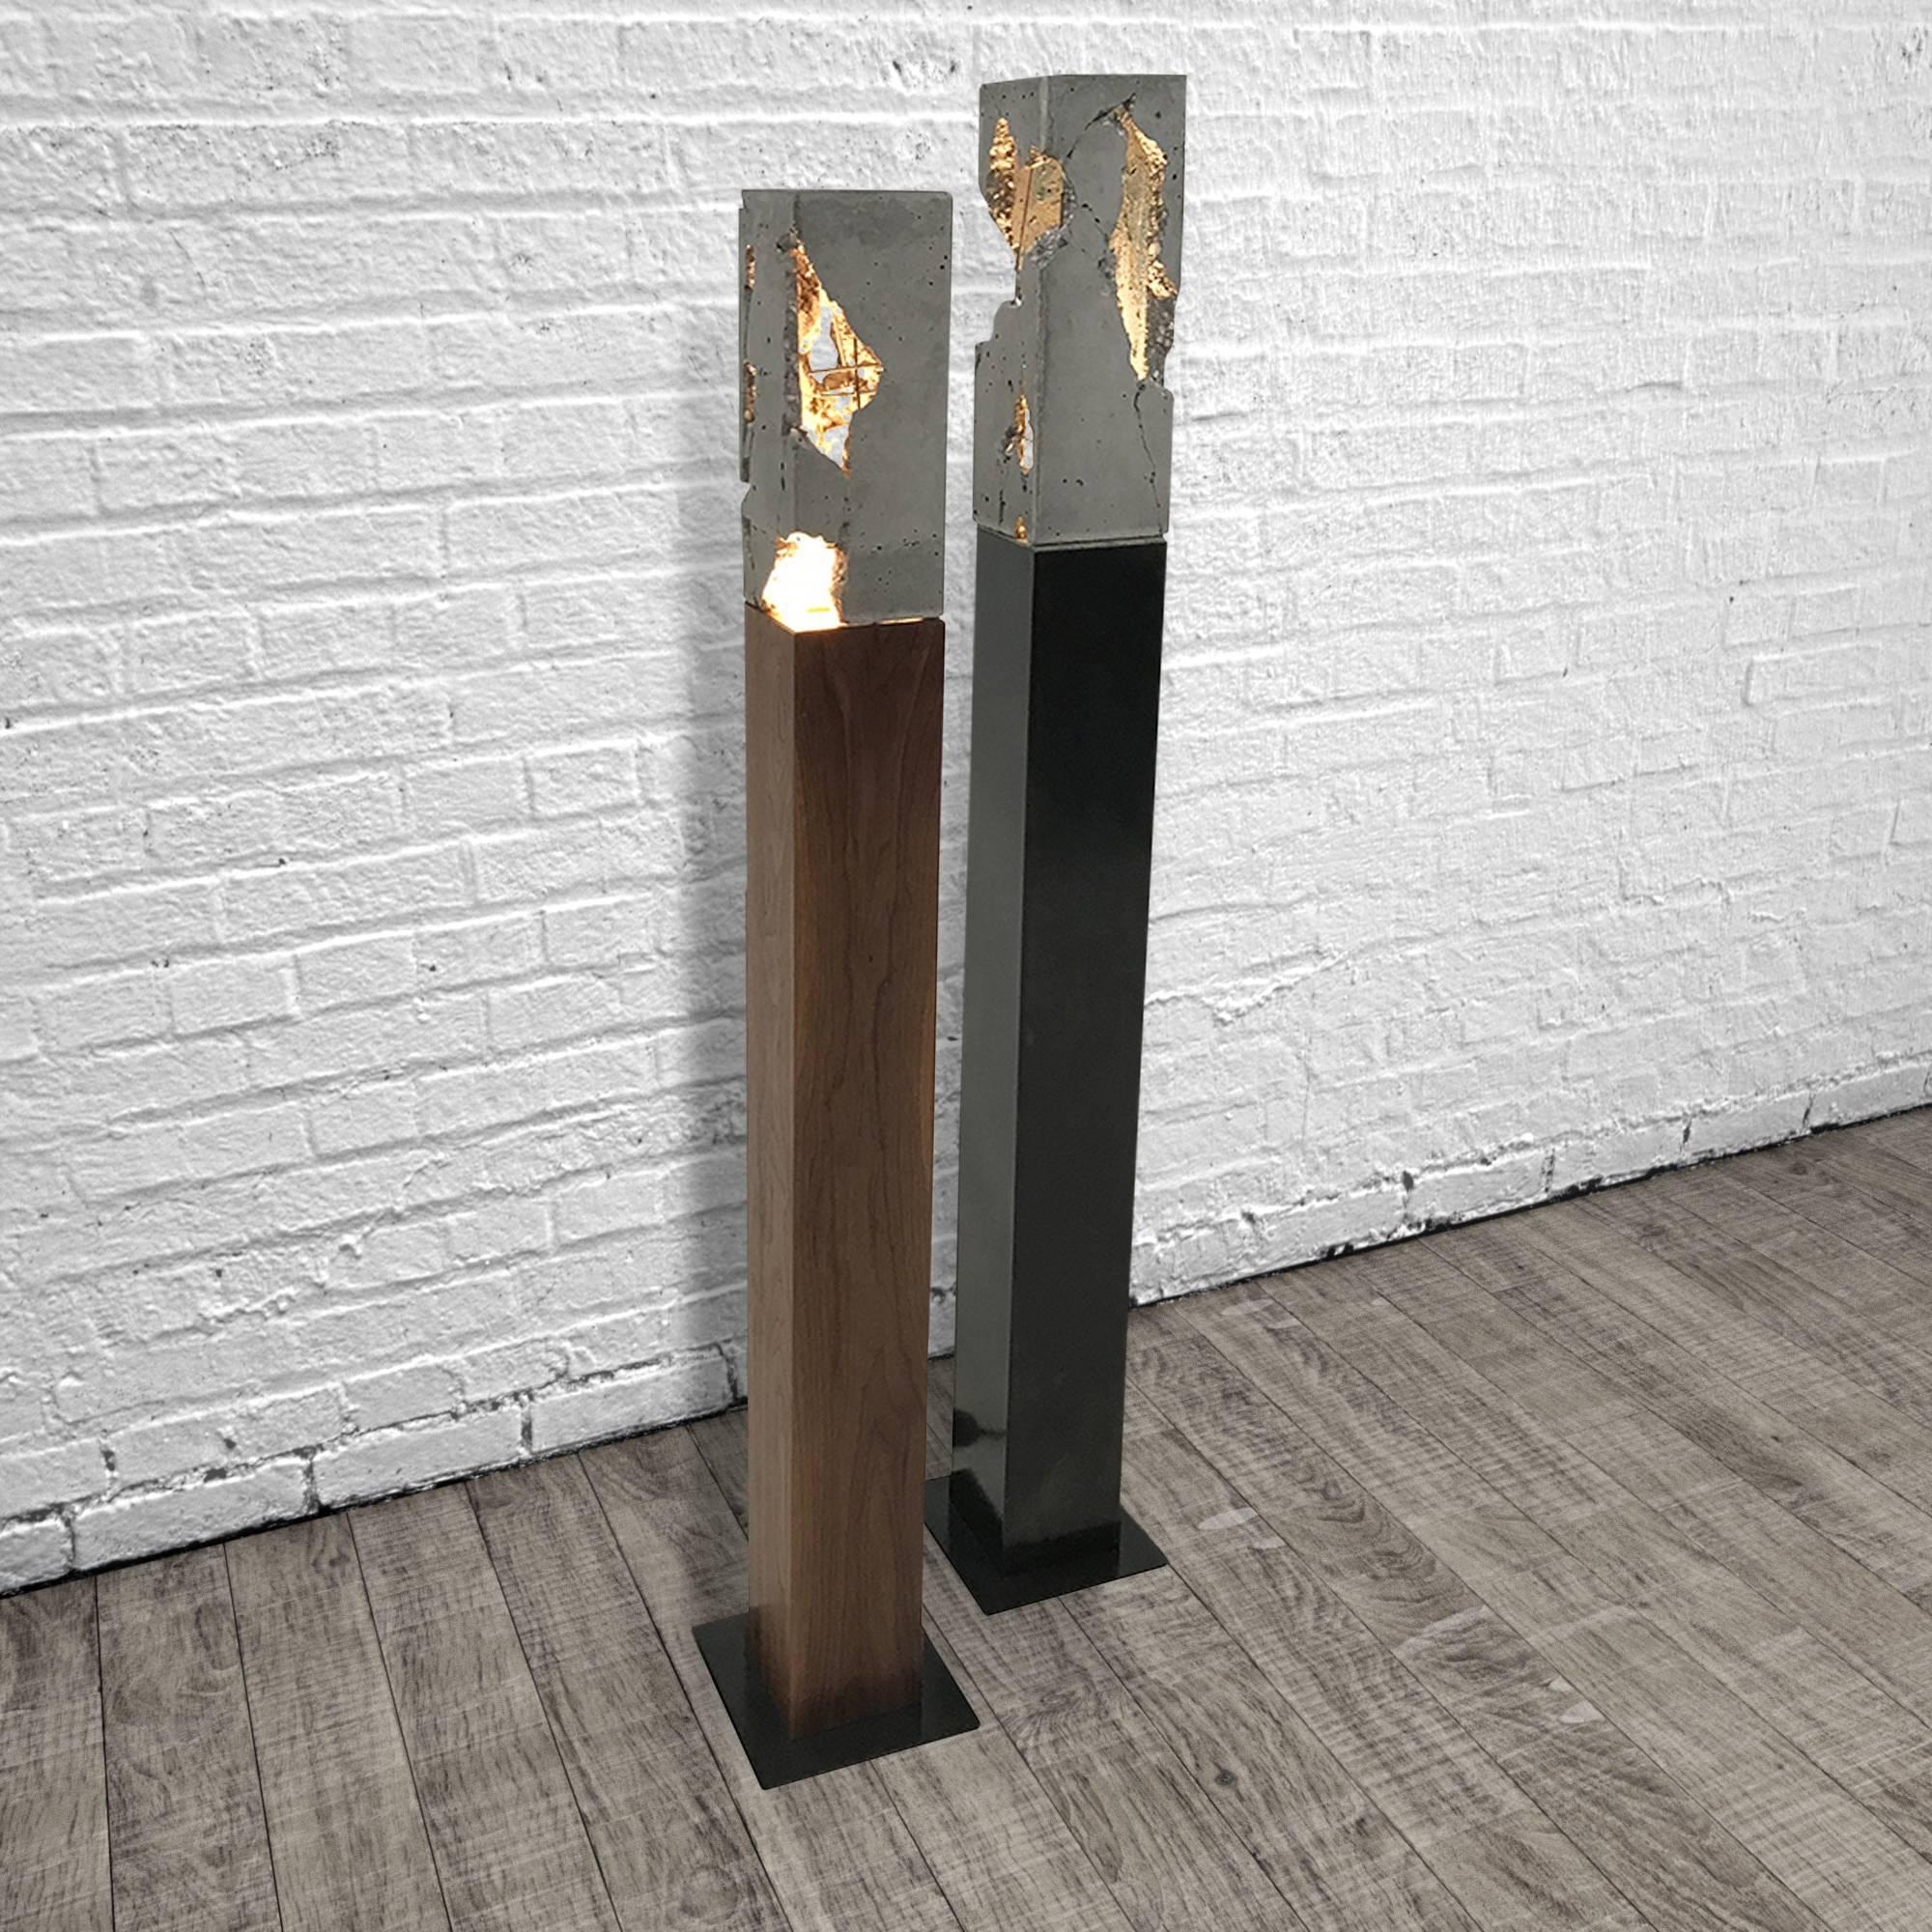 Ces lampes sont composées d'une base en bois massif ou en acier noirci à la main et d'un 